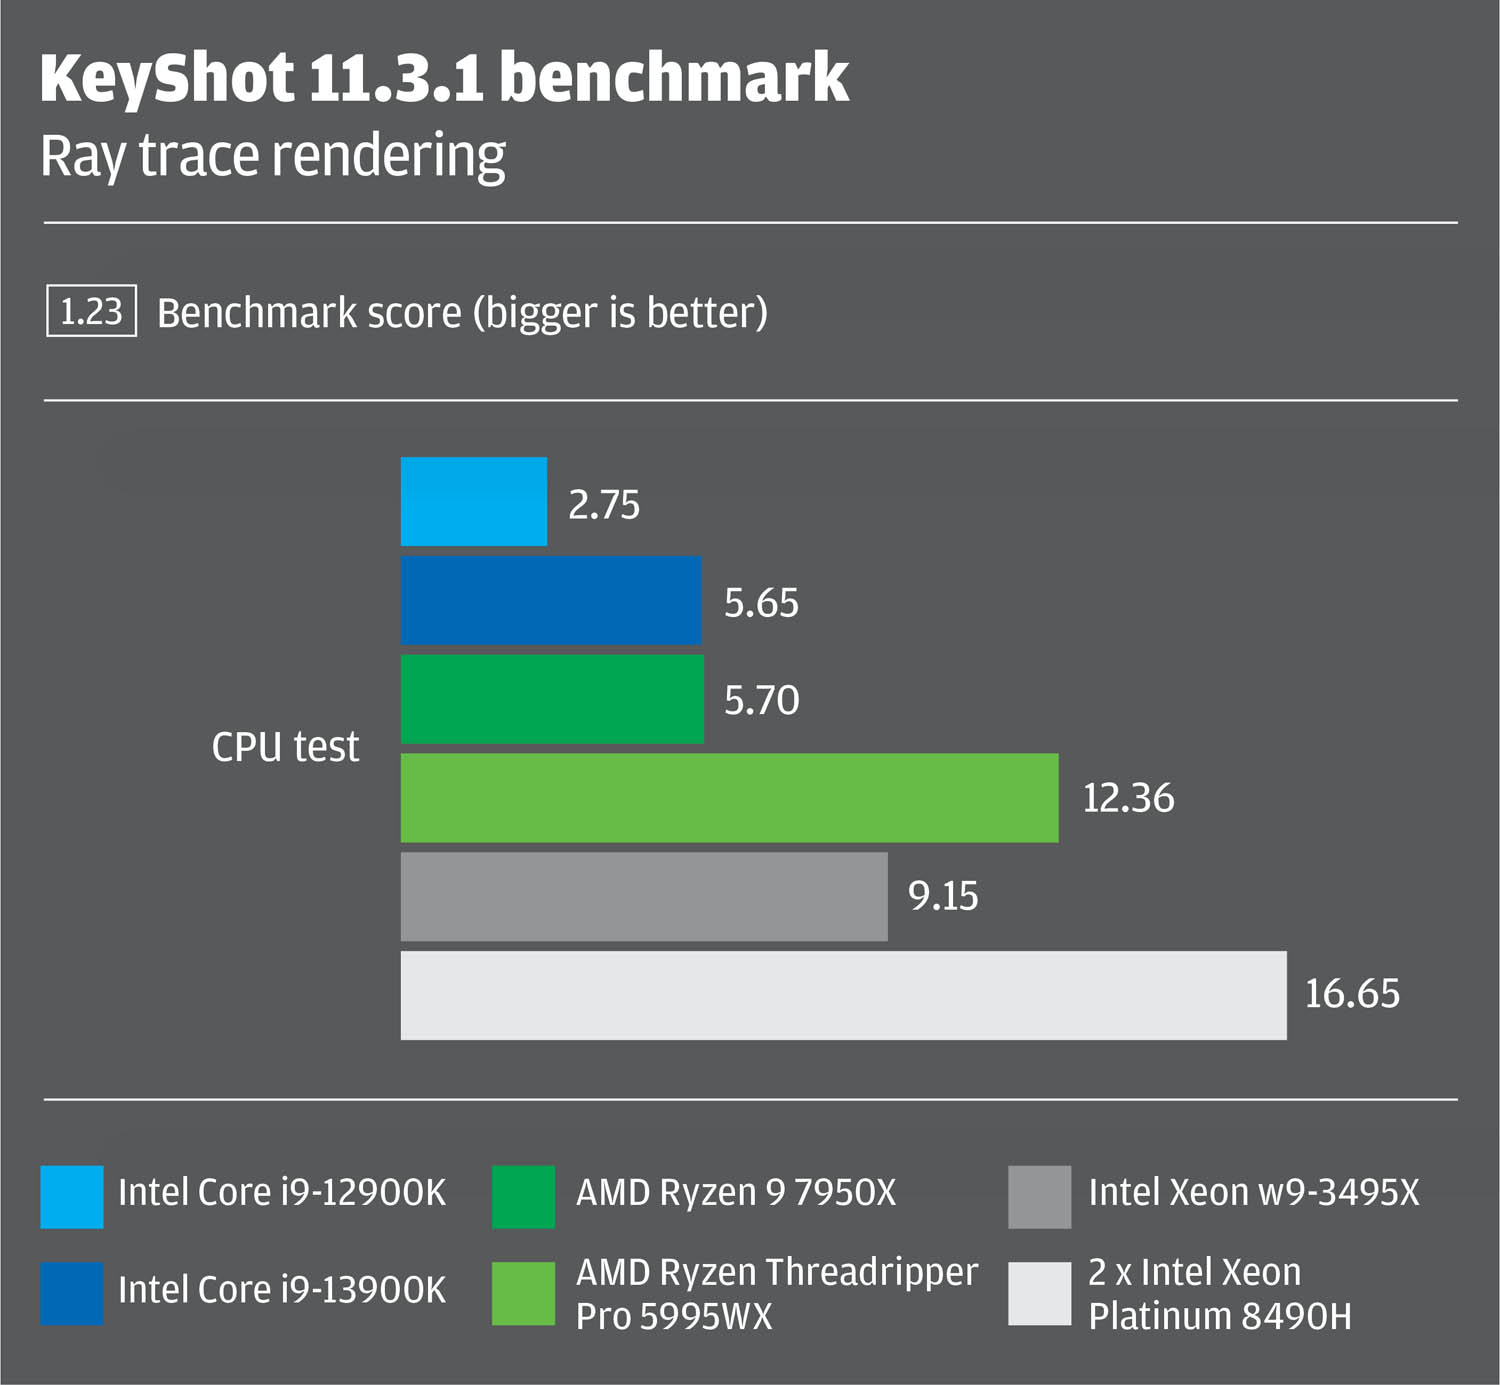 Intel Xeon Sapphire rapids vs AMD Ryzen Threadripper Pro in KeyShot rendering